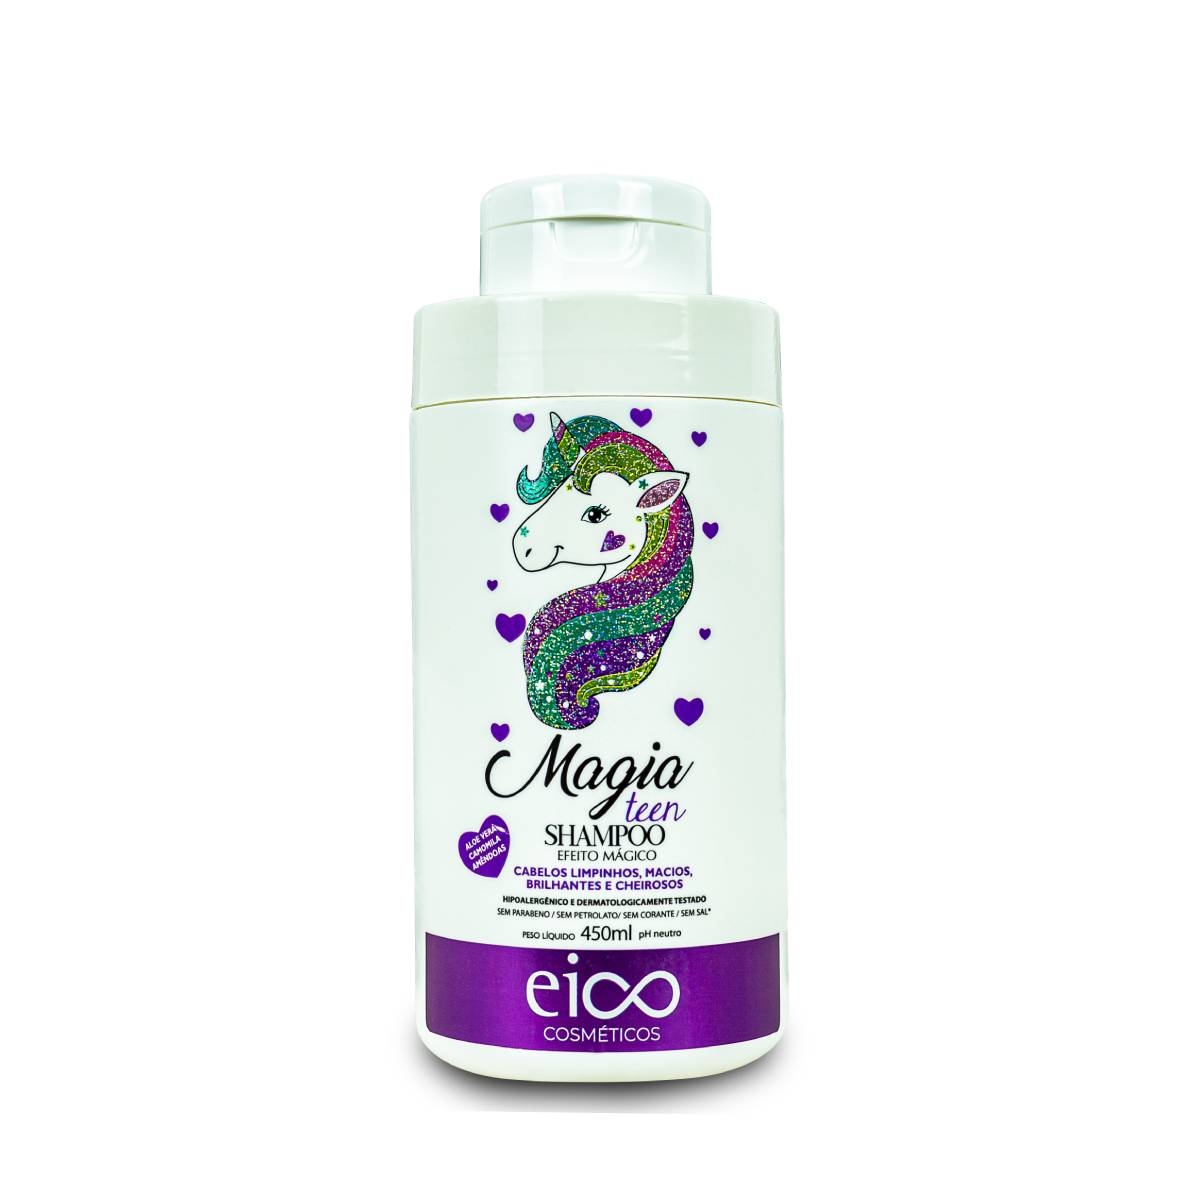 Shampoo Eico Magia Teen com 450ml 450ml